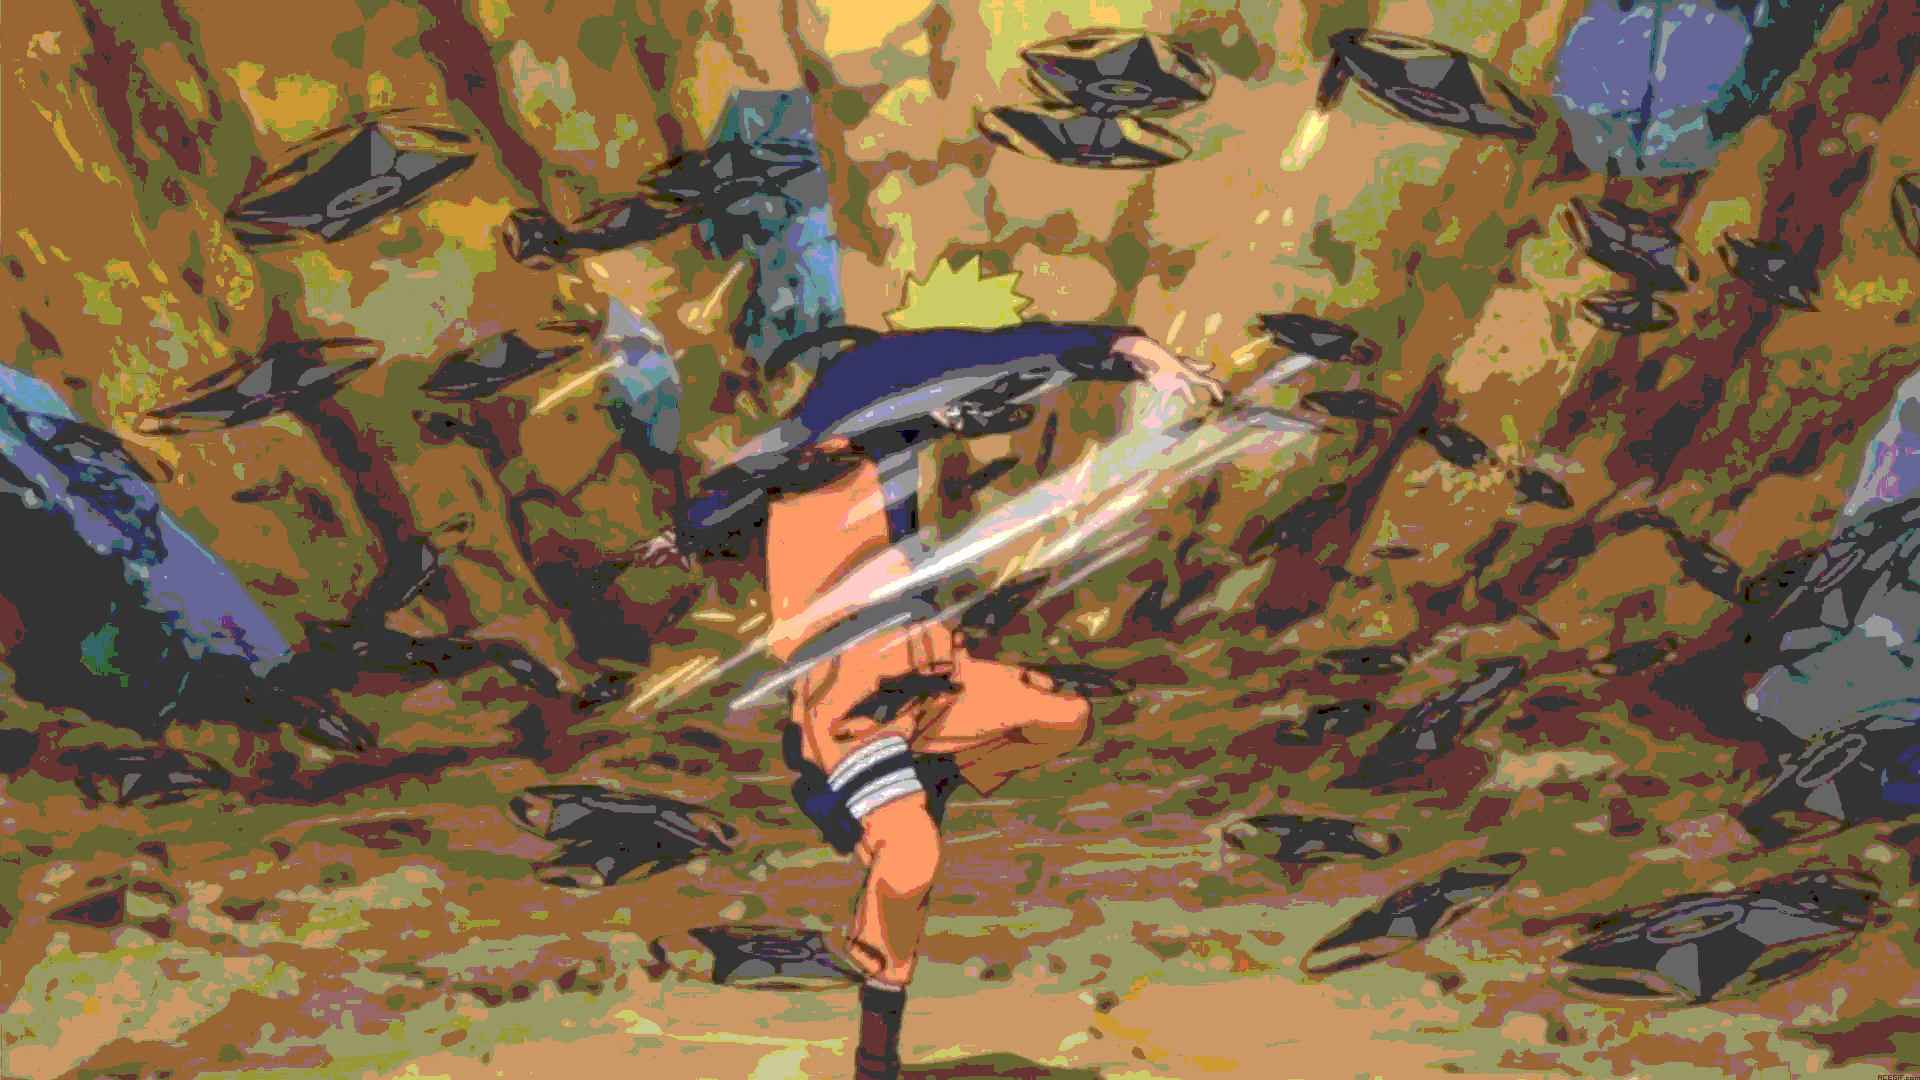 Naruto fondos de pantalla GIF animados 1920x1080